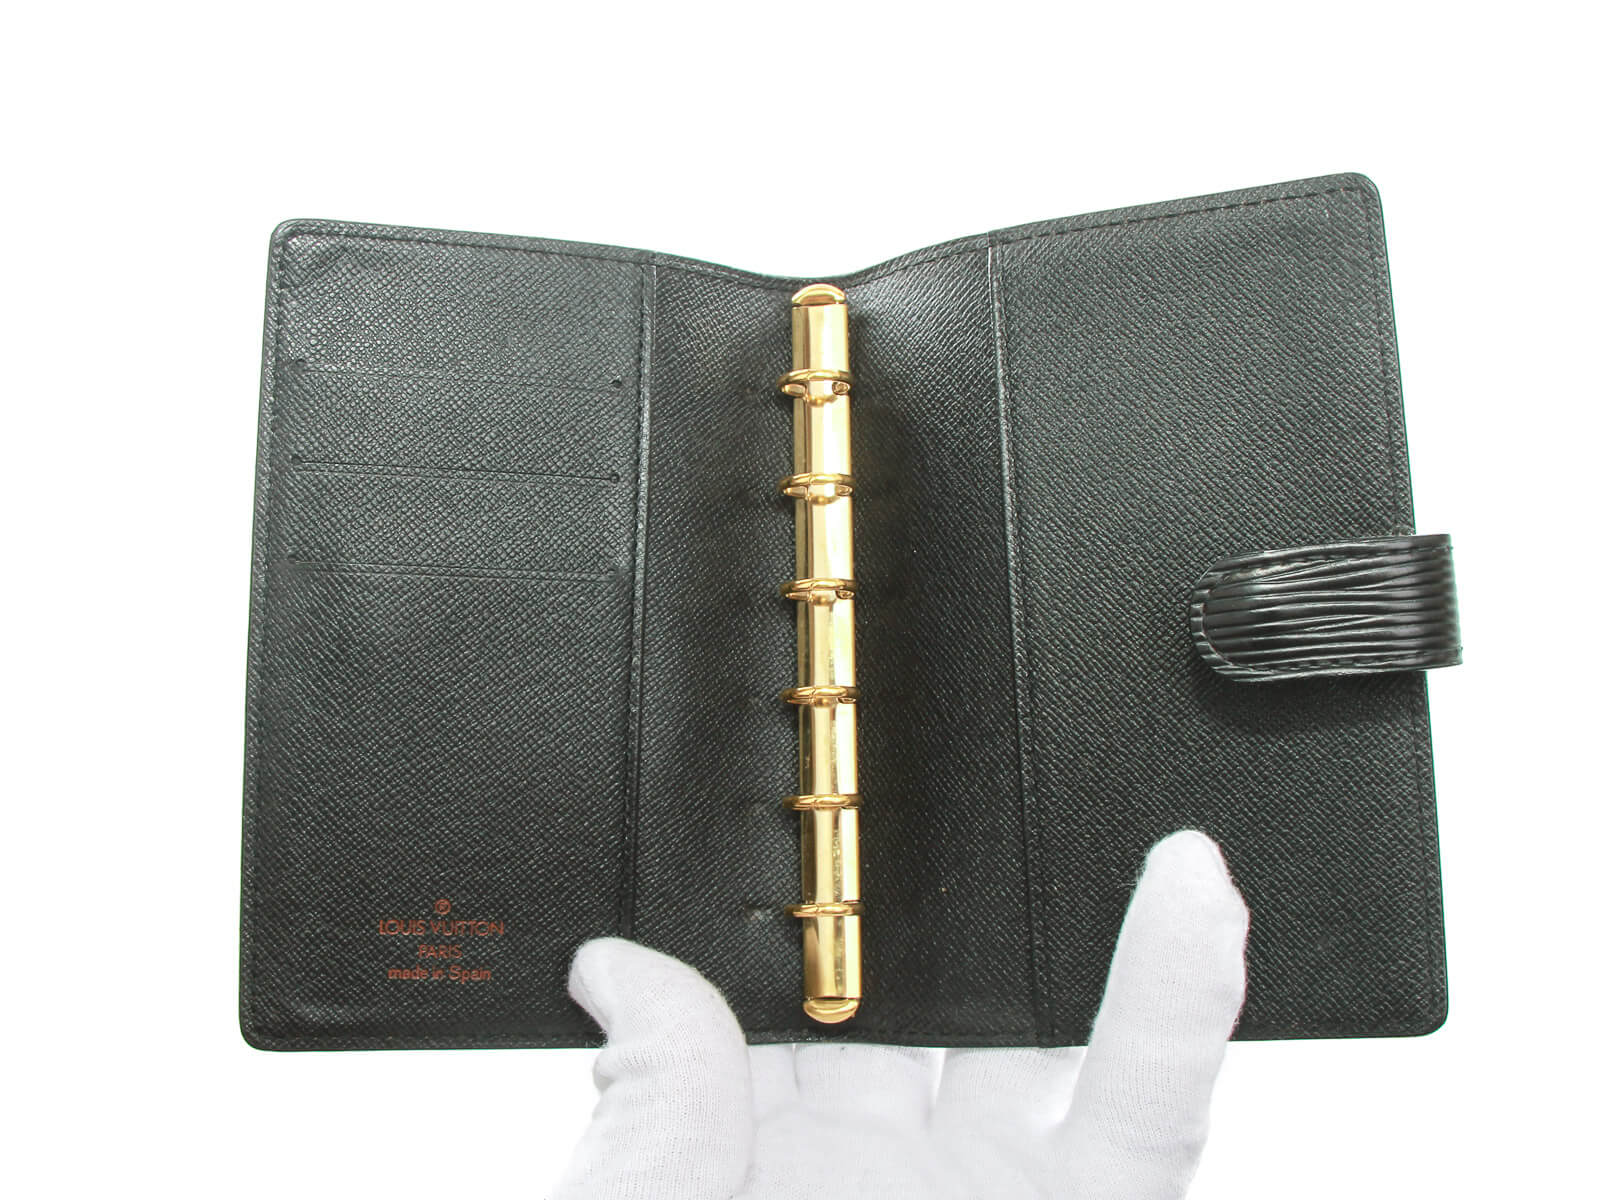 Authentic Louis Vuitton Epi Black Agenda PM notebook | Connect Japan Luxury